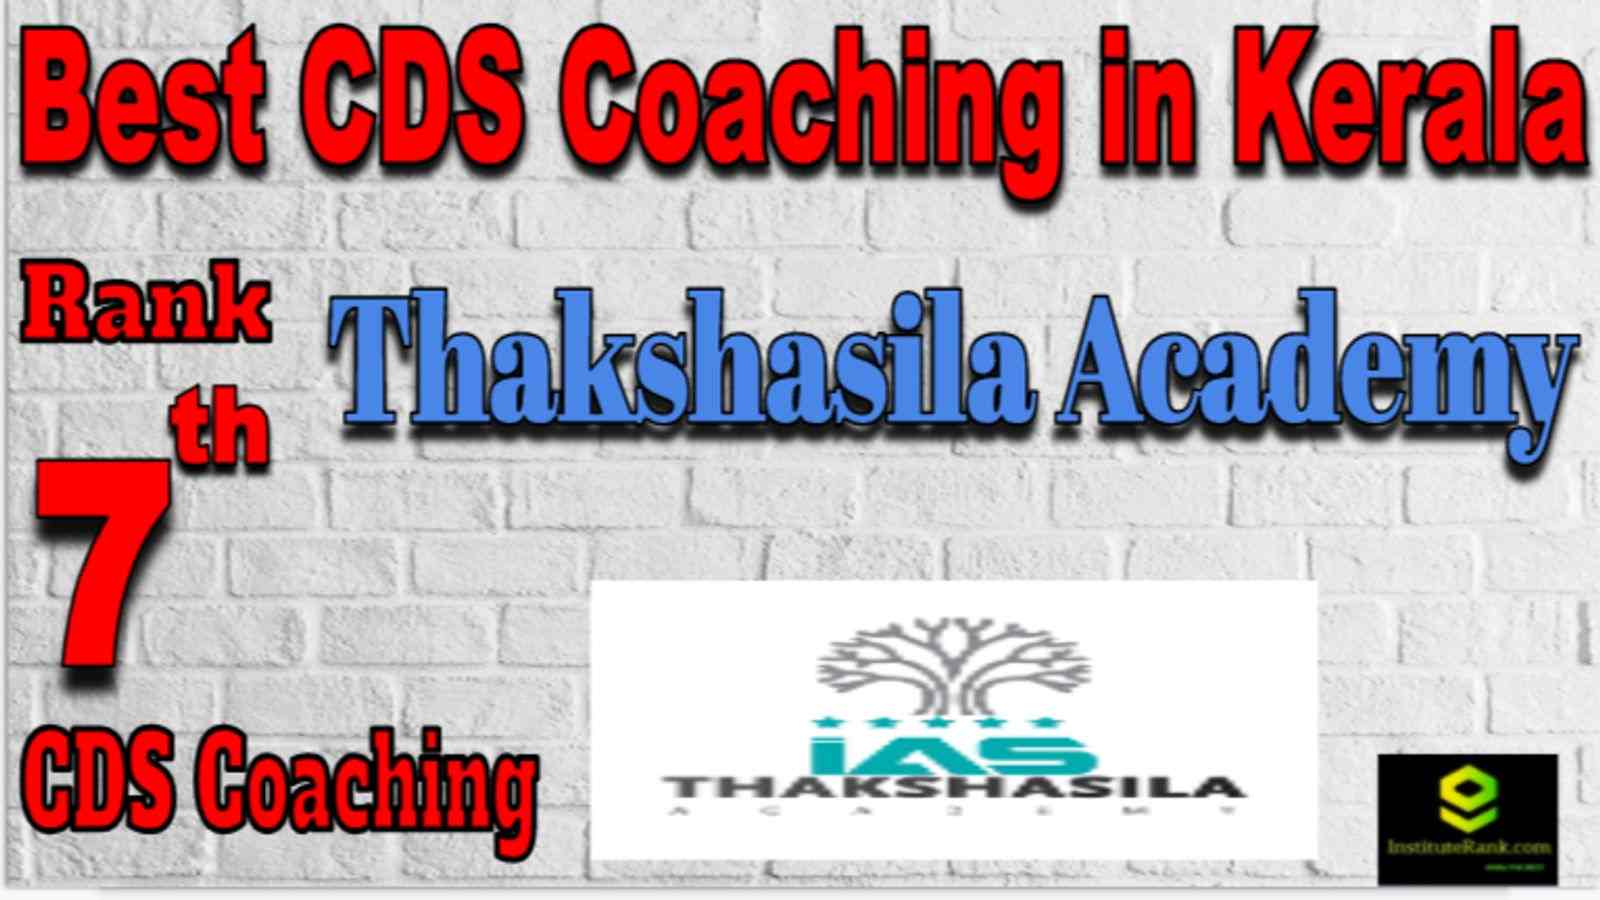 Rank 7 Best CDS Coaching in kerala